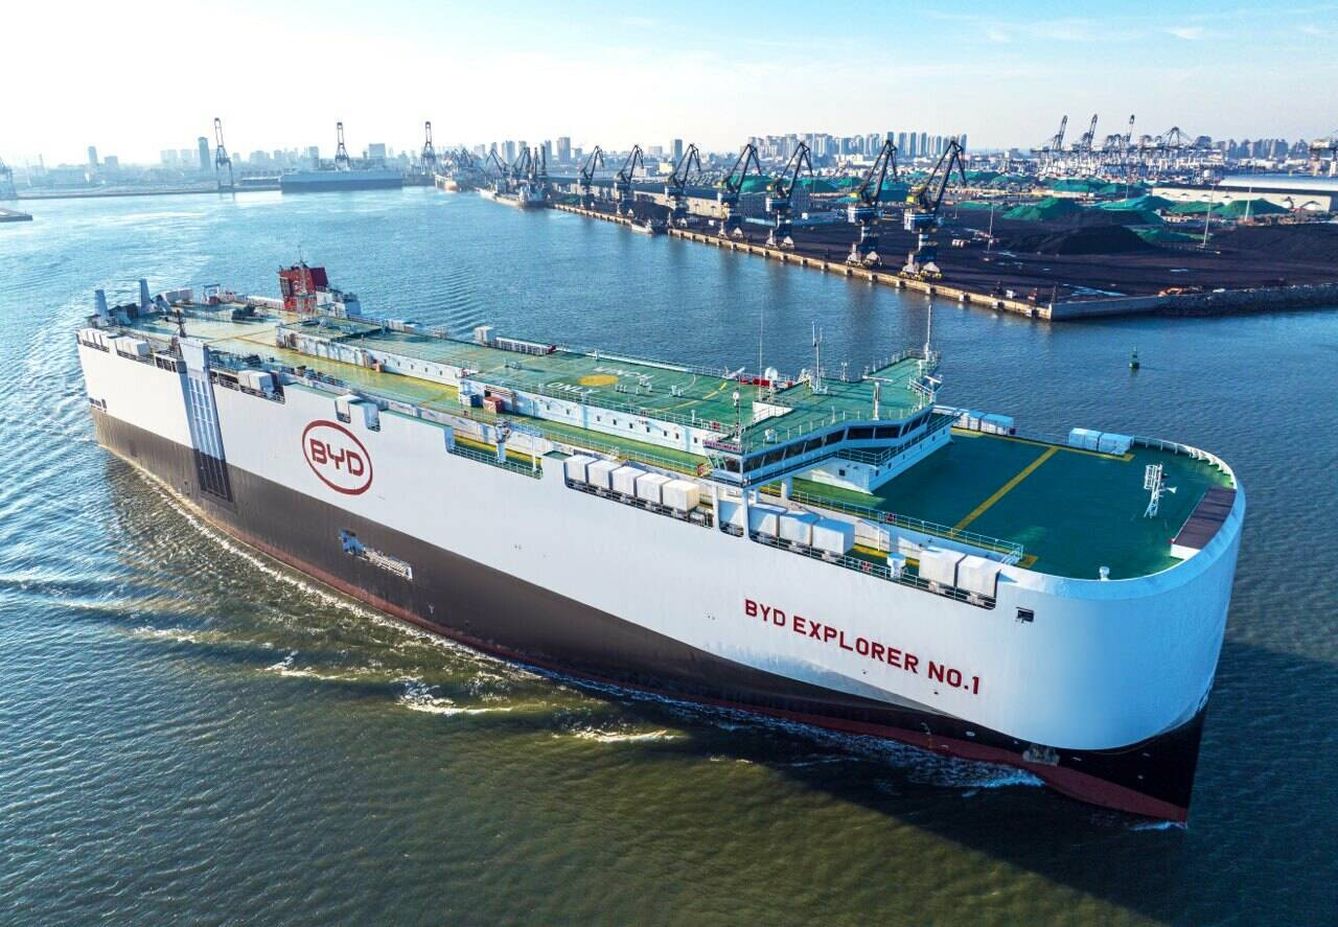 Actualmente, BYD importa a Europa todos sus coches desde China, con su propia flota de barcos.